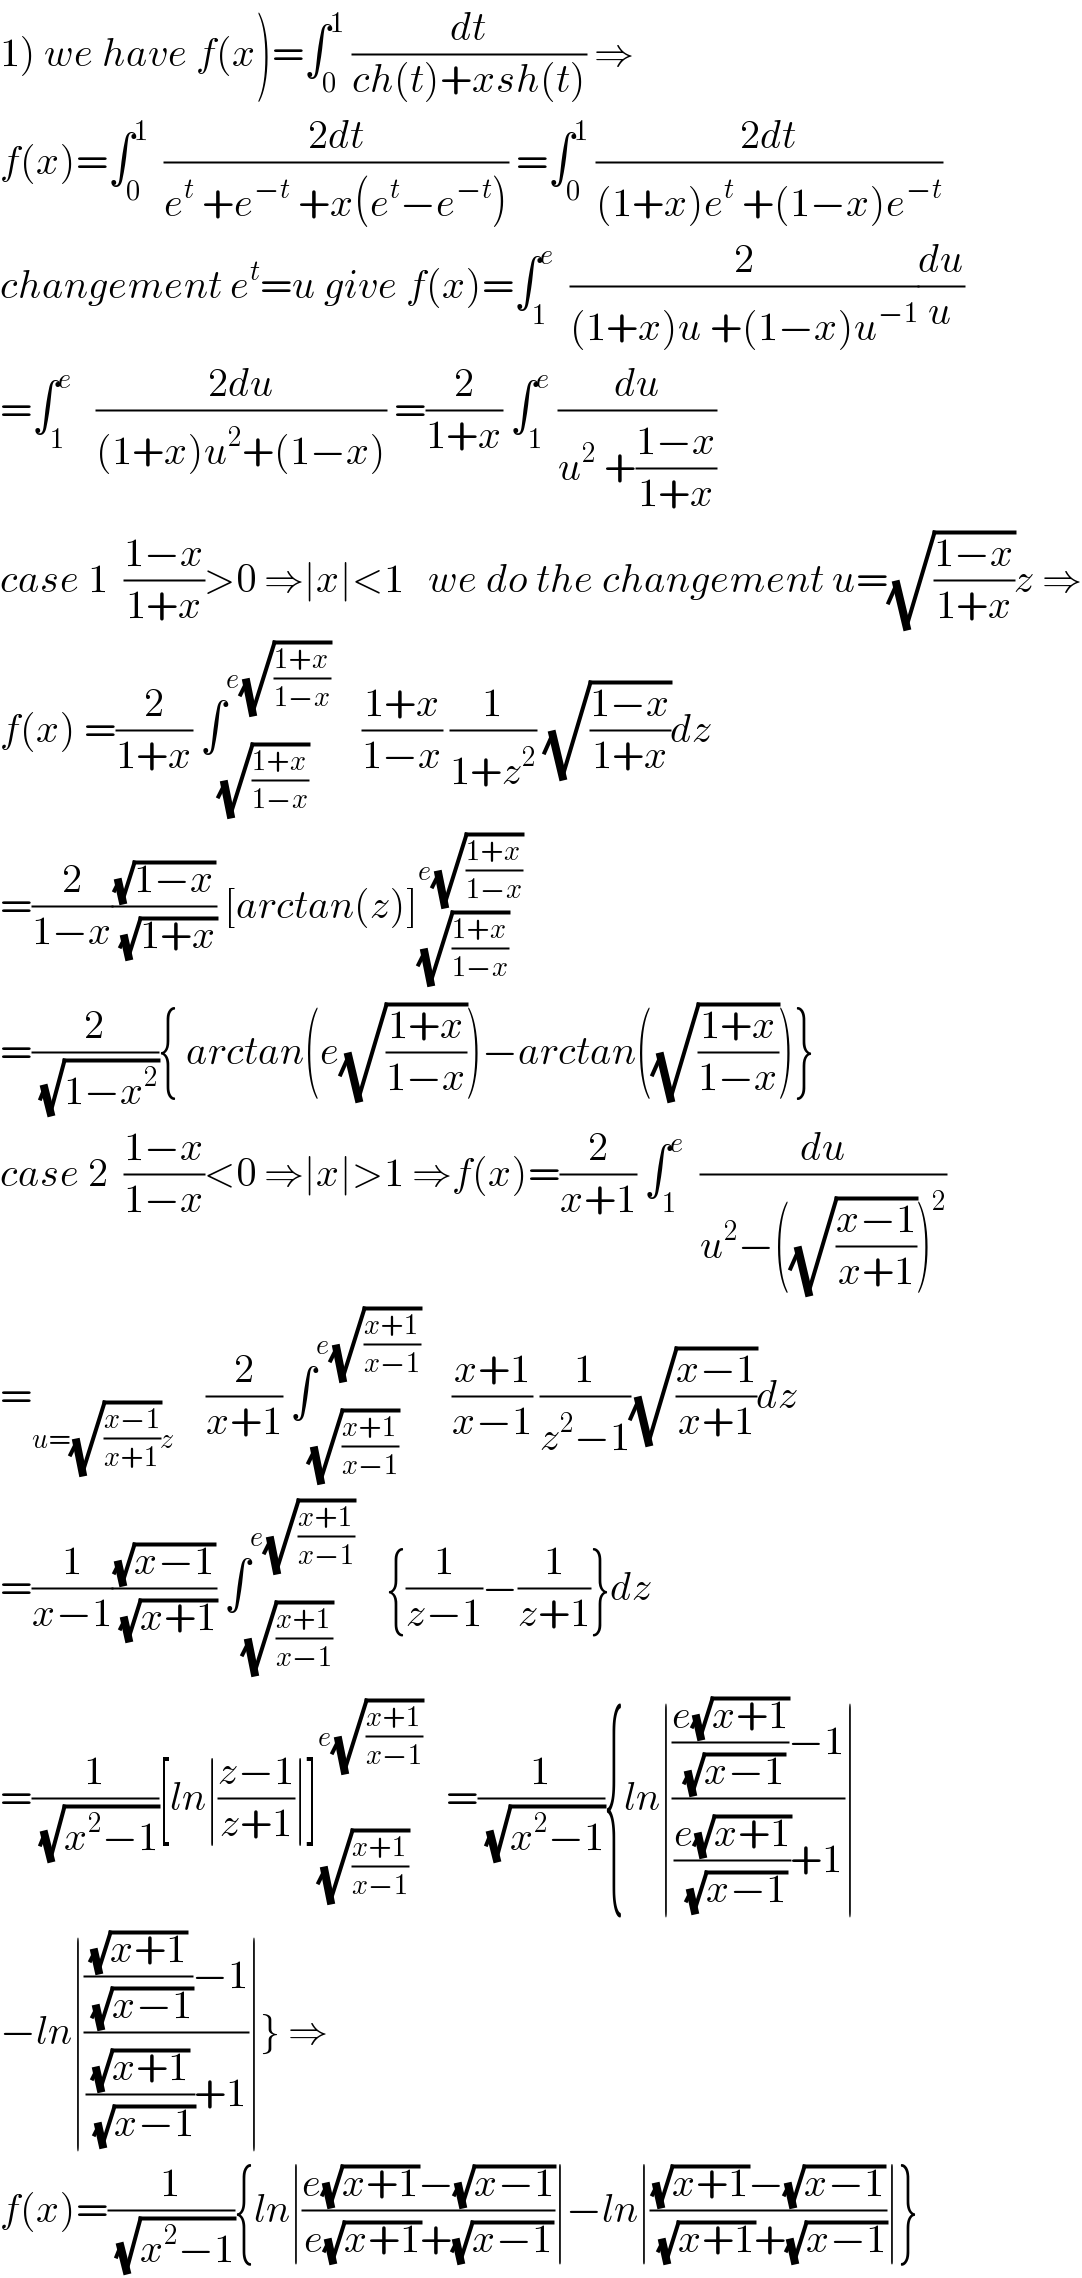 1) we have f(x)=∫_0 ^1  (dt/(ch(t)+xsh(t))) ⇒  f(x)=∫_0 ^1   ((2dt)/(e^t  +e^(−t)  +x(e^t −e^(−t) ))) =∫_0 ^1  ((2dt)/((1+x)e^t  +(1−x)e^(−t) ))  changement e^t =u give f(x)=∫_1 ^e   (2/((1+x)u +(1−x)u^(−1) ))(du/u)  =∫_1 ^e    ((2du)/((1+x)u^2 +(1−x))) =(2/(1+x)) ∫_1 ^e  (du/(u^2  +((1−x)/(1+x))))  case 1  ((1−x)/(1+x))>0 ⇒∣x∣<1   we do the changement u=(√((1−x)/(1+x)))z ⇒  f(x) =(2/(1+x)) ∫_(√((1+x)/(1−x))) ^(e(√((1+x)/(1−x))))     ((1+x)/(1−x)) (1/(1+z^2 )) (√((1−x)/(1+x)))dz  =(2/(1−x))((√(1−x))/(√(1+x))) [arctan(z)]_(√((1+x)/(1−x))) ^(e(√((1+x)/(1−x))))   =(2/(√(1−x^2 ))){ arctan(e(√((1+x)/(1−x))))−arctan((√((1+x)/(1−x))))}  case 2  ((1−x)/(1−x))<0 ⇒∣x∣>1 ⇒f(x)=(2/(x+1)) ∫_1 ^e   (du/(u^2 −((√((x−1)/(x+1))))^2 ))  =_(u=(√((x−1)/(x+1)))z)     (2/(x+1)) ∫_(√((x+1)/(x−1))) ^(e(√((x+1)/(x−1))))     ((x+1)/(x−1)) (1/(z^2 −1))(√((x−1)/(x+1)))dz  =(1/(x−1))((√(x−1))/(√(x+1))) ∫_(√((x+1)/(x−1))) ^(e(√((x+1)/(x−1))))     {(1/(z−1))−(1/(z+1))}dz  =(1/(√(x^2 −1)))[ln∣((z−1)/(z+1))∣]_(√((x+1)/(x−1))) ^(e(√((x+1)/(x−1))))    =(1/(√(x^2 −1))){ln∣((((e(√(x+1)))/(√(x−1)))−1)/(((e(√(x+1)))/(√(x−1)))+1))∣  −ln∣((((√(x+1))/(√(x−1)))−1)/(((√(x+1))/(√(x−1)))+1))∣} ⇒  f(x)=(1/(√(x^2 −1))){ln∣((e(√(x+1))−(√(x−1)))/(e(√(x+1))+(√(x−1))))∣−ln∣(((√(x+1))−(√(x−1)))/((√(x+1))+(√(x−1))))∣}  